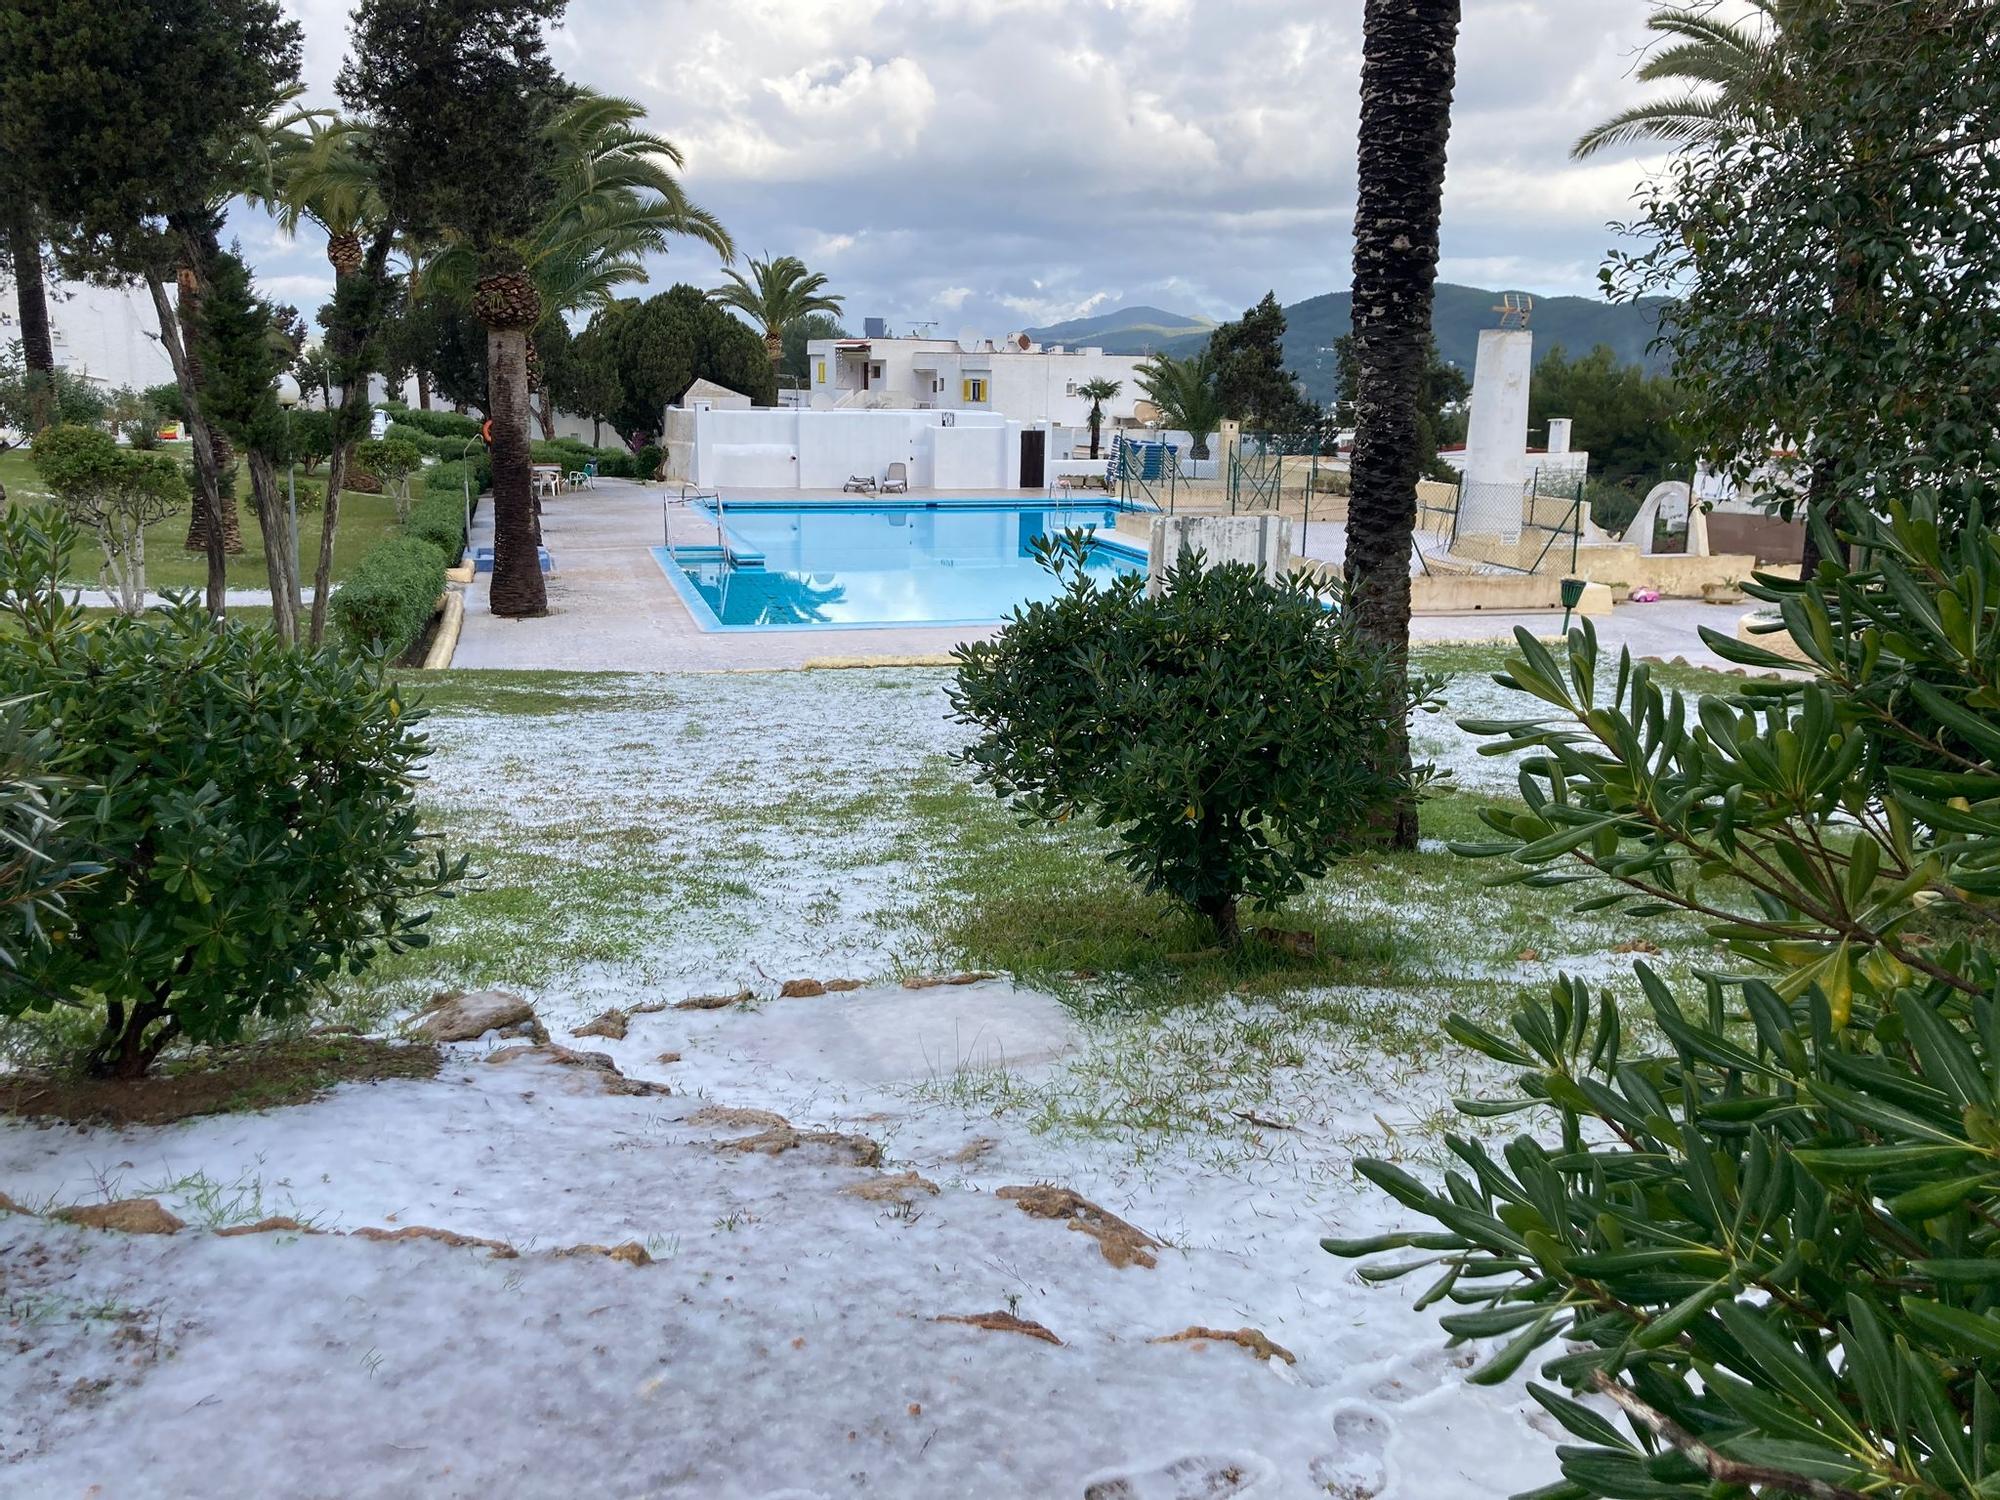 Bajada de temperaturas en Ibiza: Una manta de granizo cubre Siesta